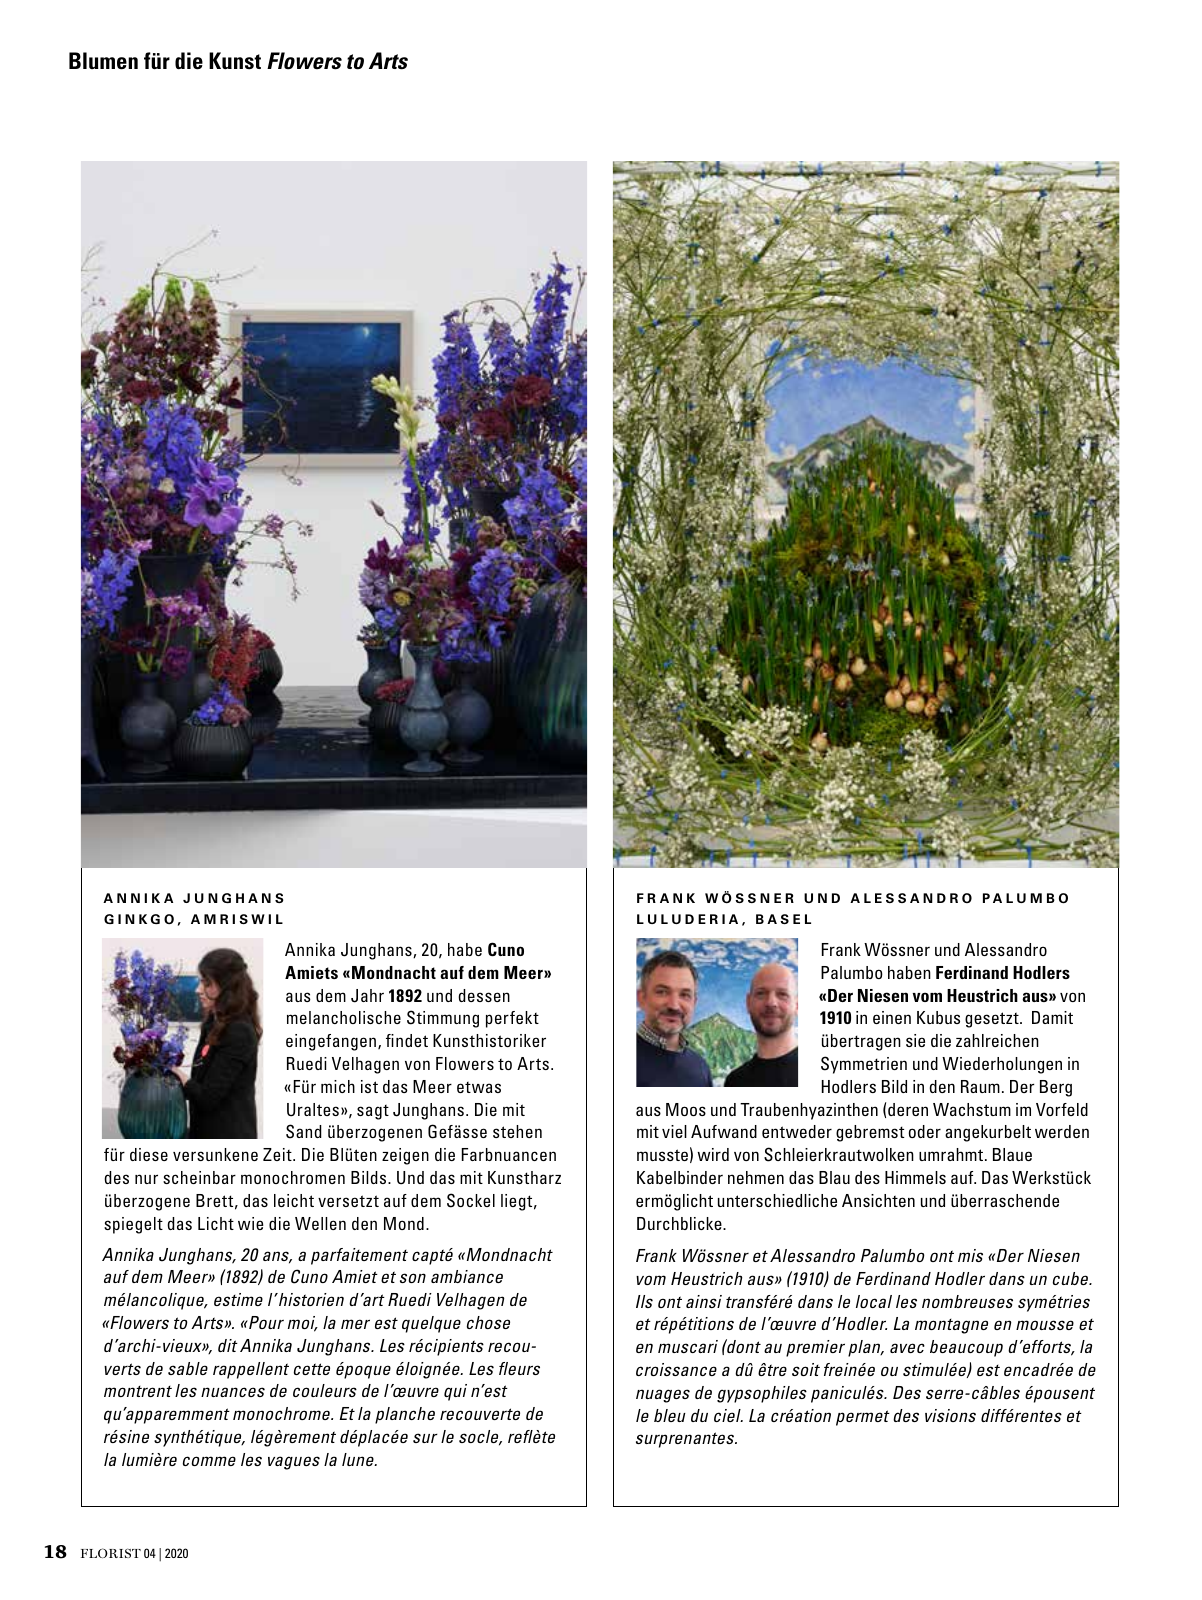 Vorschau Florist - Ausgabe April 2020 Seite 16